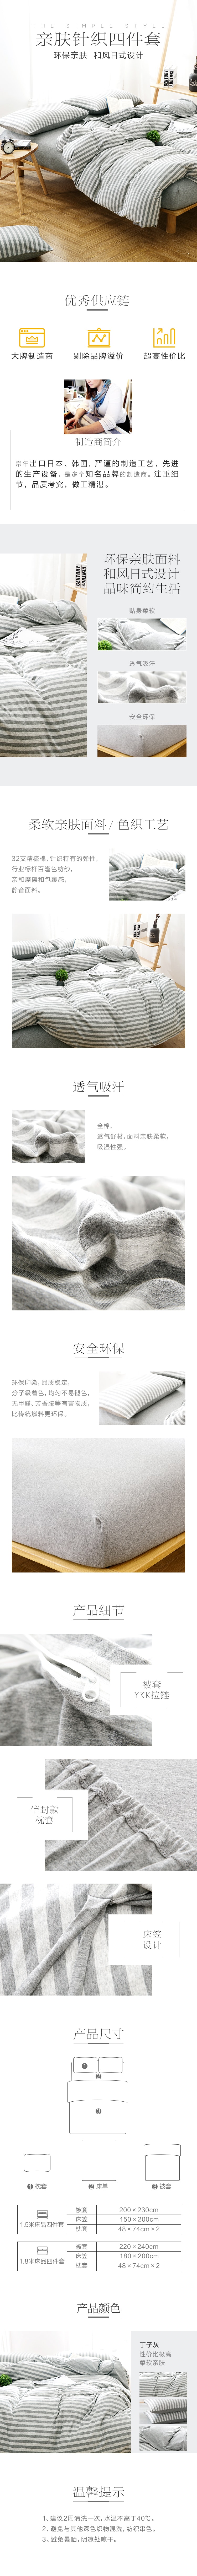 Grey Striped 100% Cotton Duvet Cover Set 4pcs 200*230cm